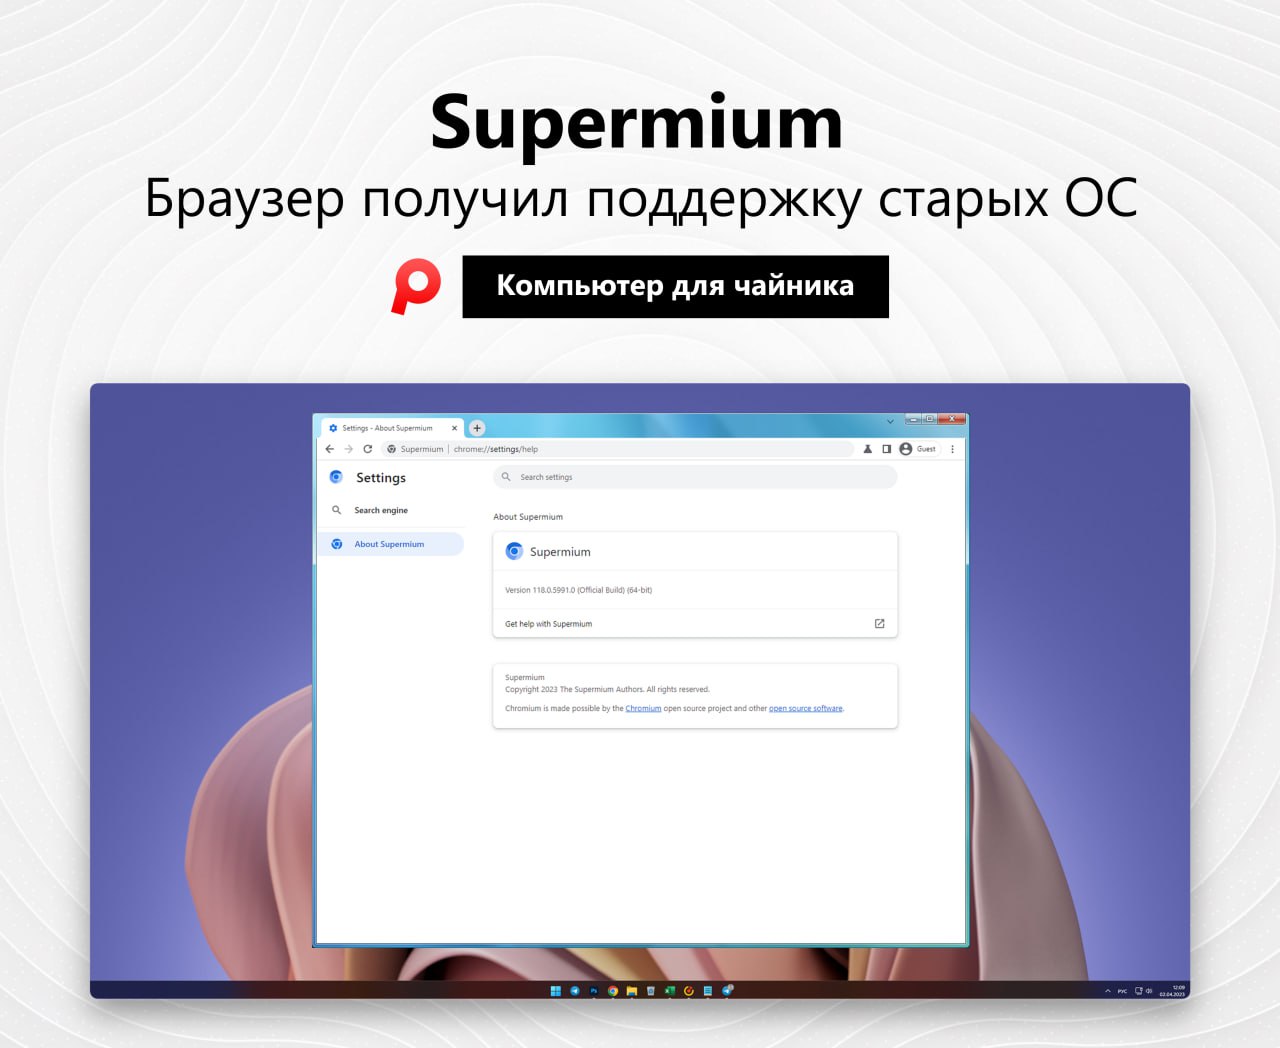 Supermium browser